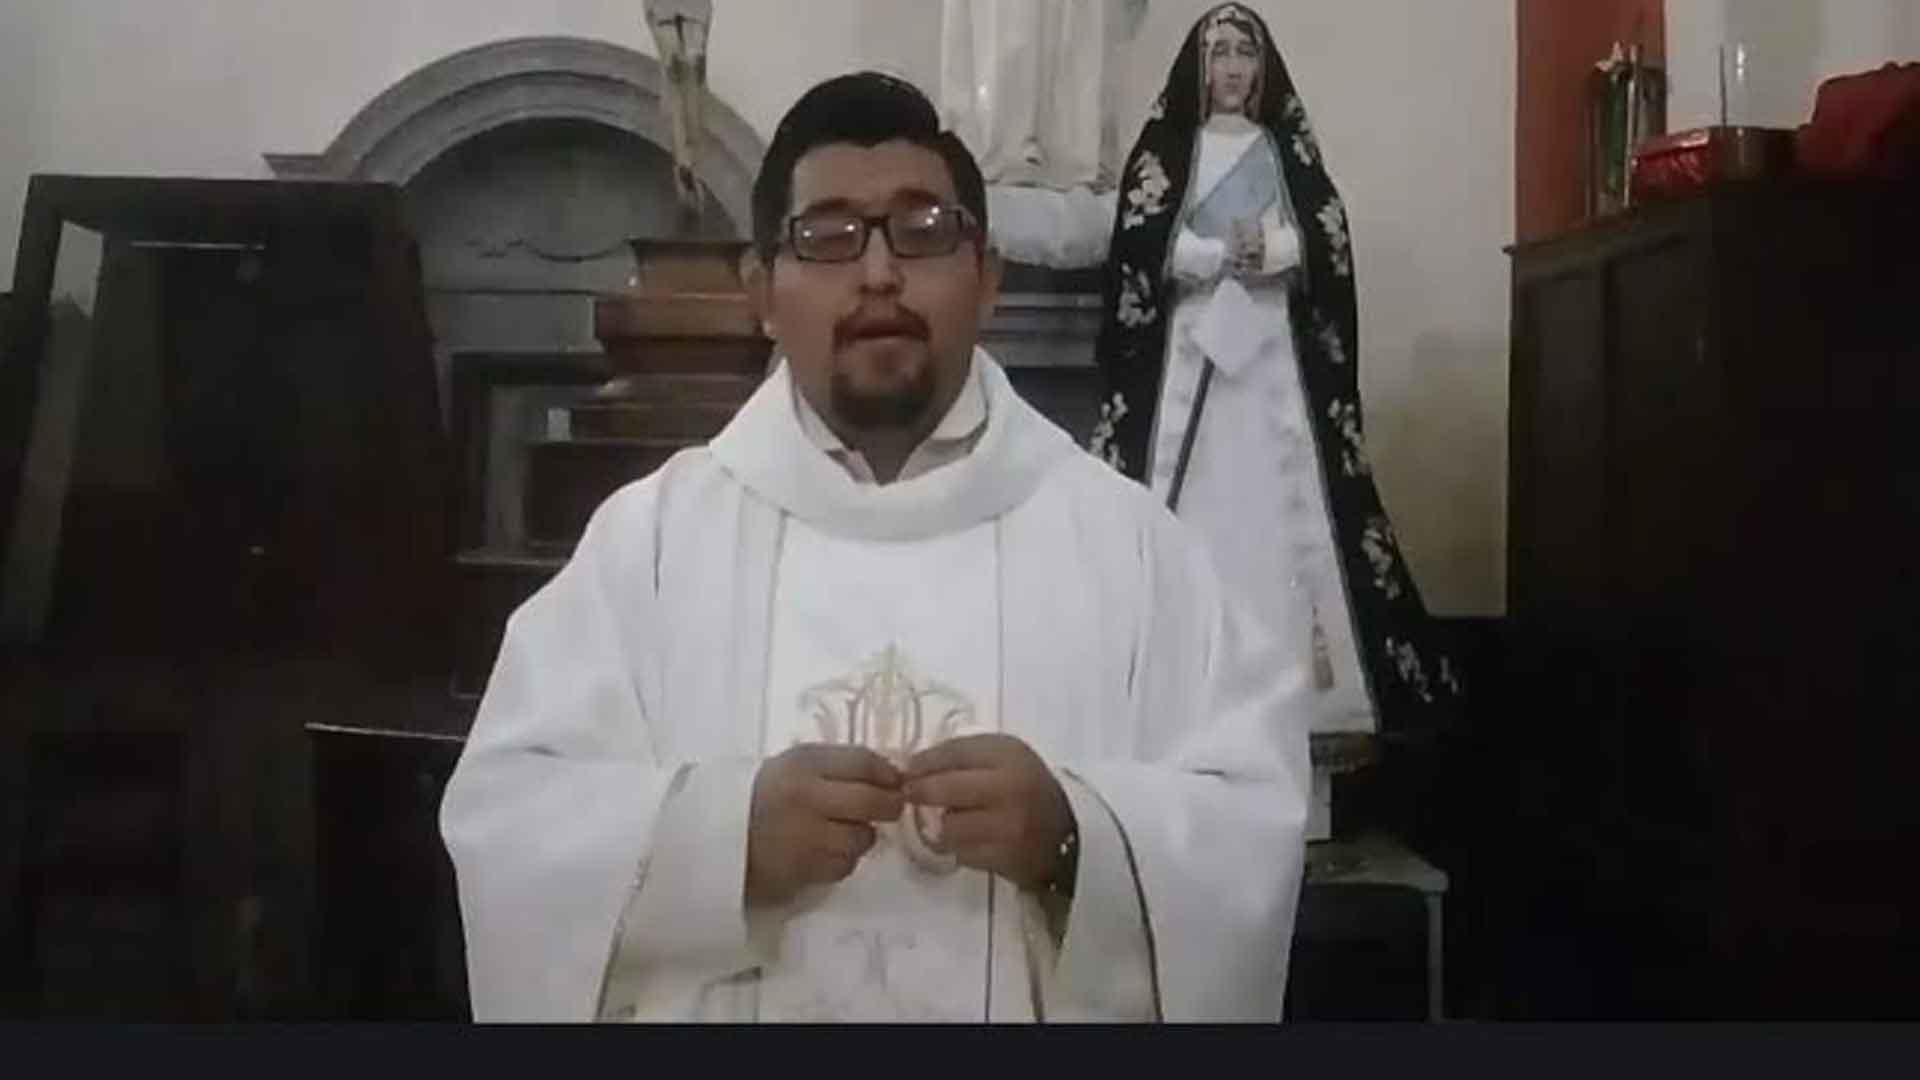 culmina juicio de sacerdote católico por violación, en medio de amenazas a familia de víctima (nota de POPLab) julioastillero.com